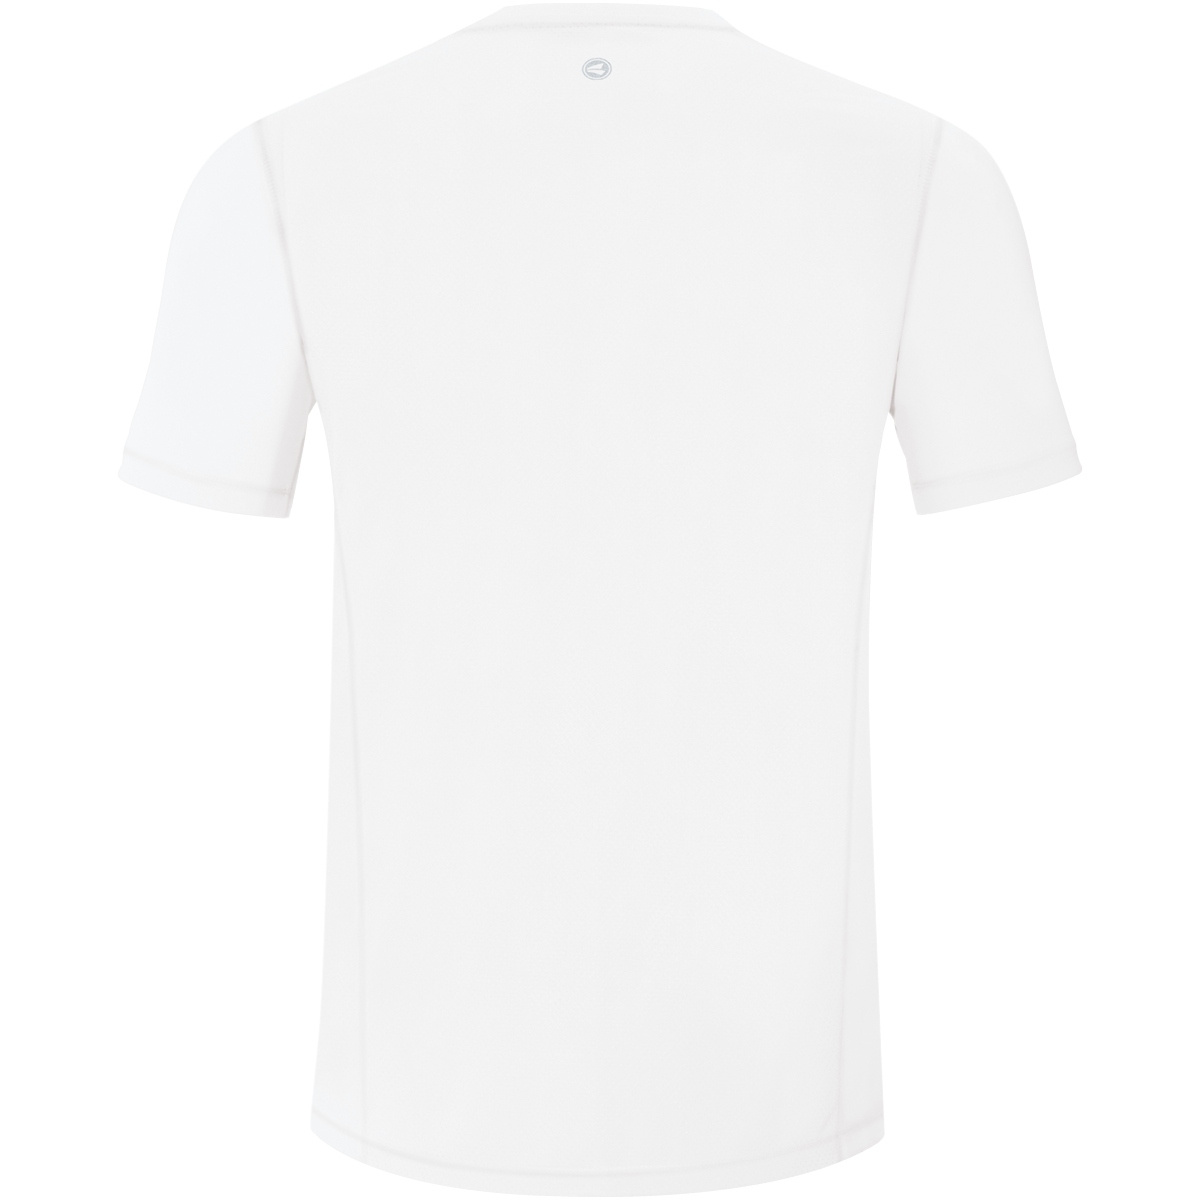 JAKO Kids Mens T-Shirt Running Shirt Functional Shirt Sports 128-XXXL Black 6175 